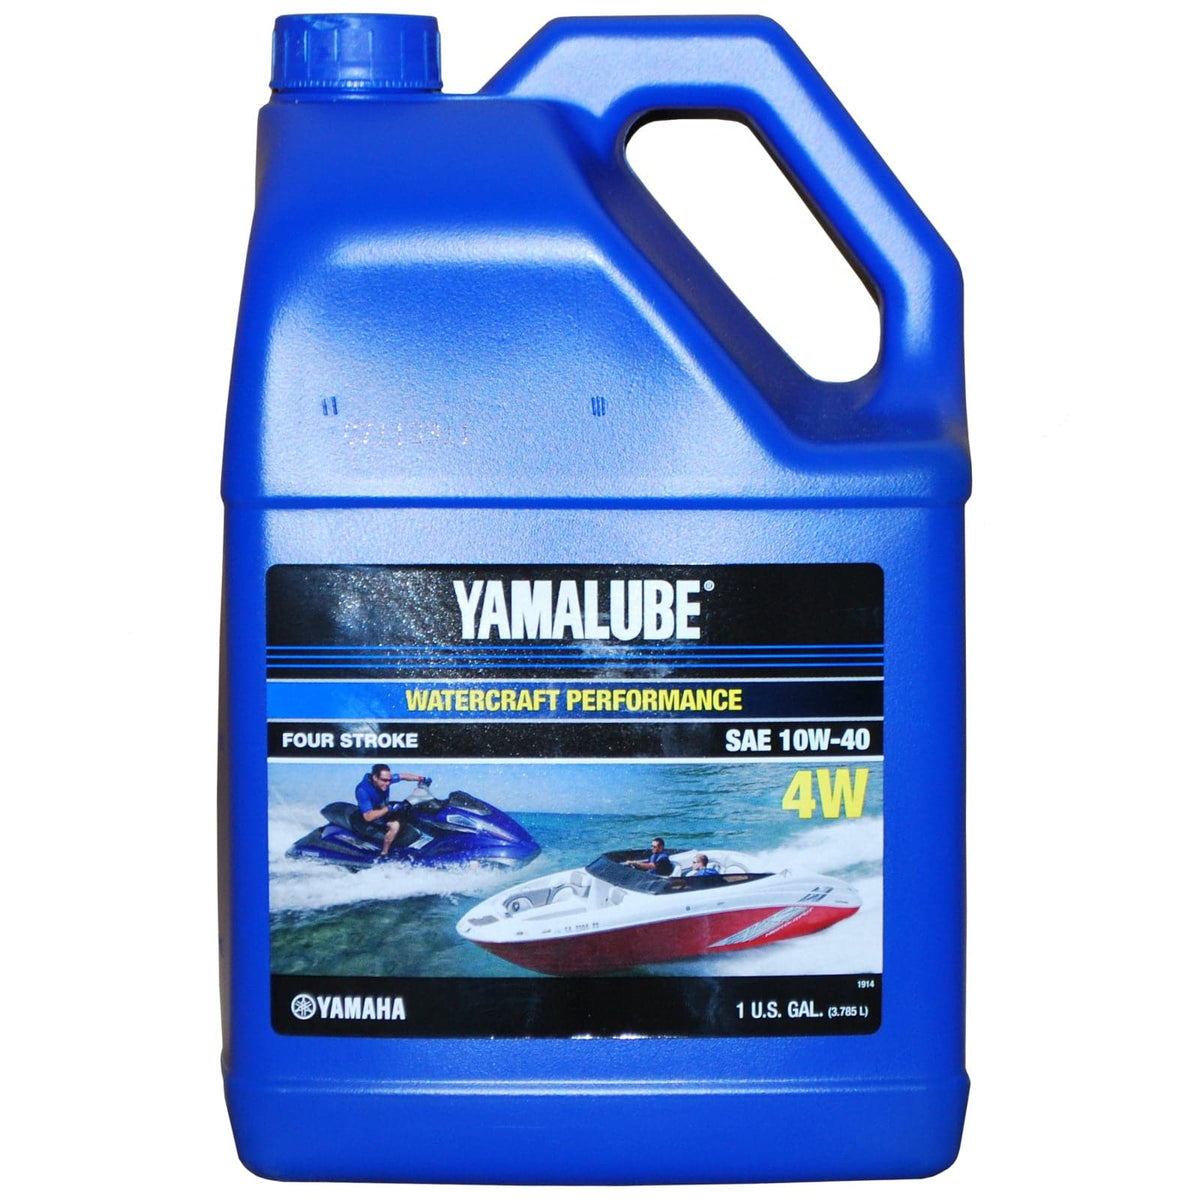 4 Stroke oil change kit for Yamaha 1.8 Liter